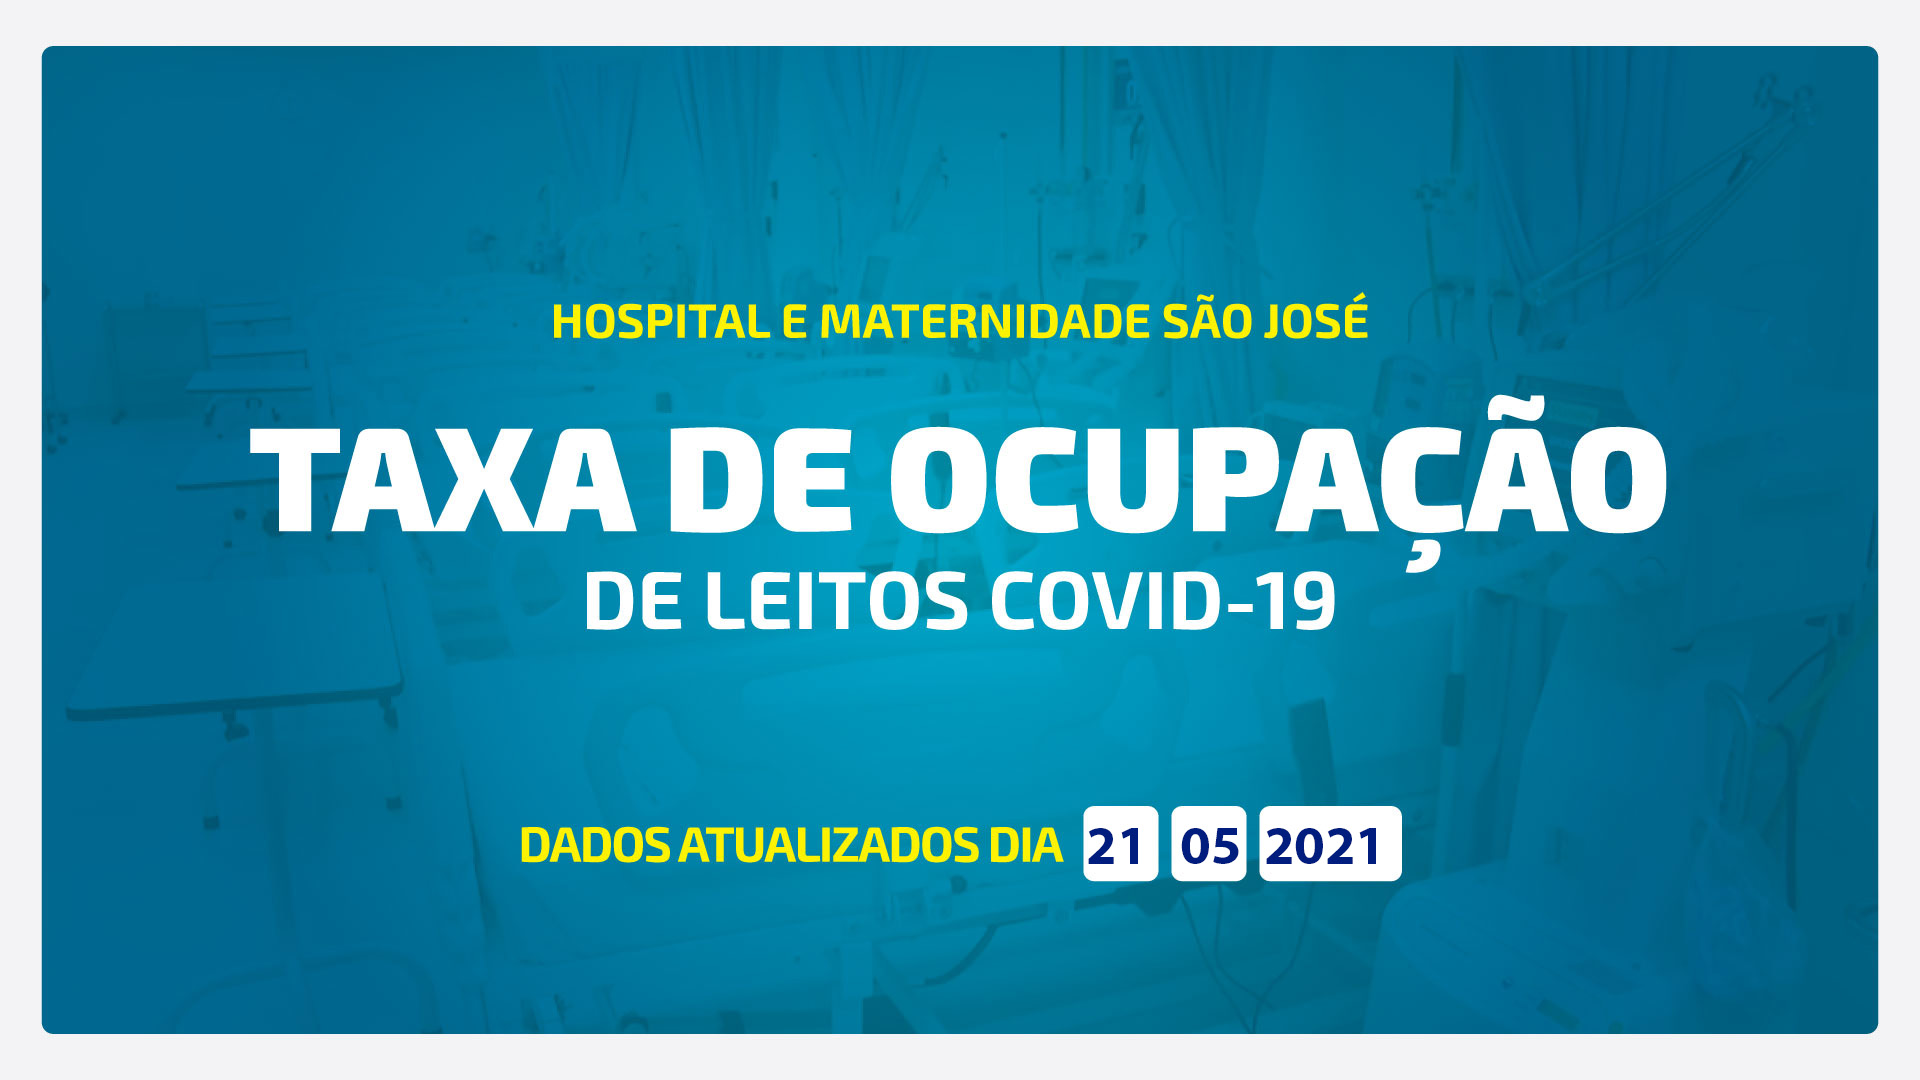 TAXA DE OCUPAÇÃO DE LEITOS DE COVID-19 ATUALIZADA DIA 21/05/2021